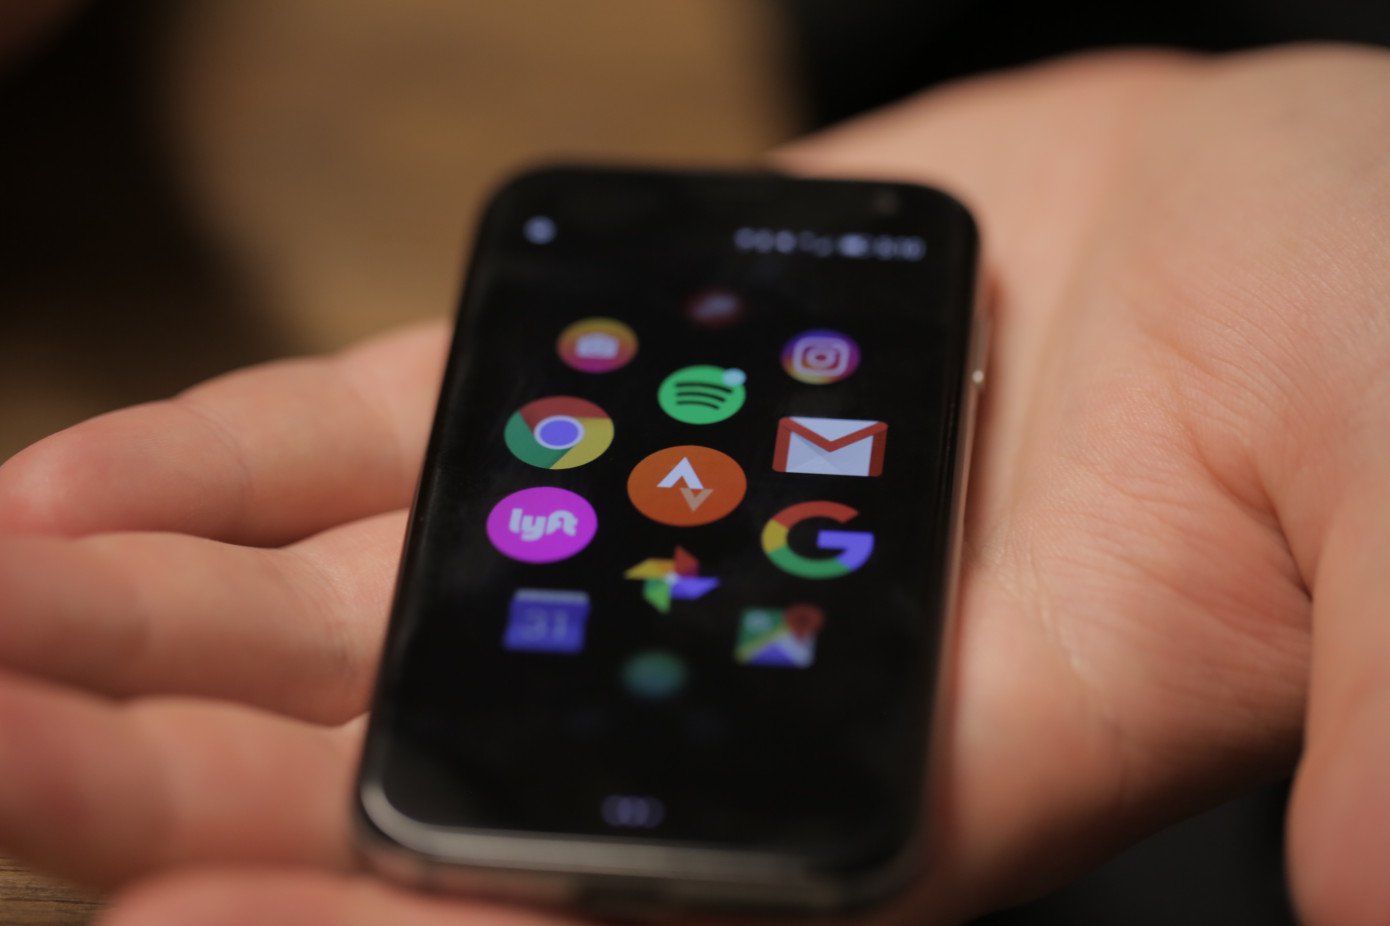 Palm karar canlandırmak için küçük bir akıllı telefon. Belki de o zevk